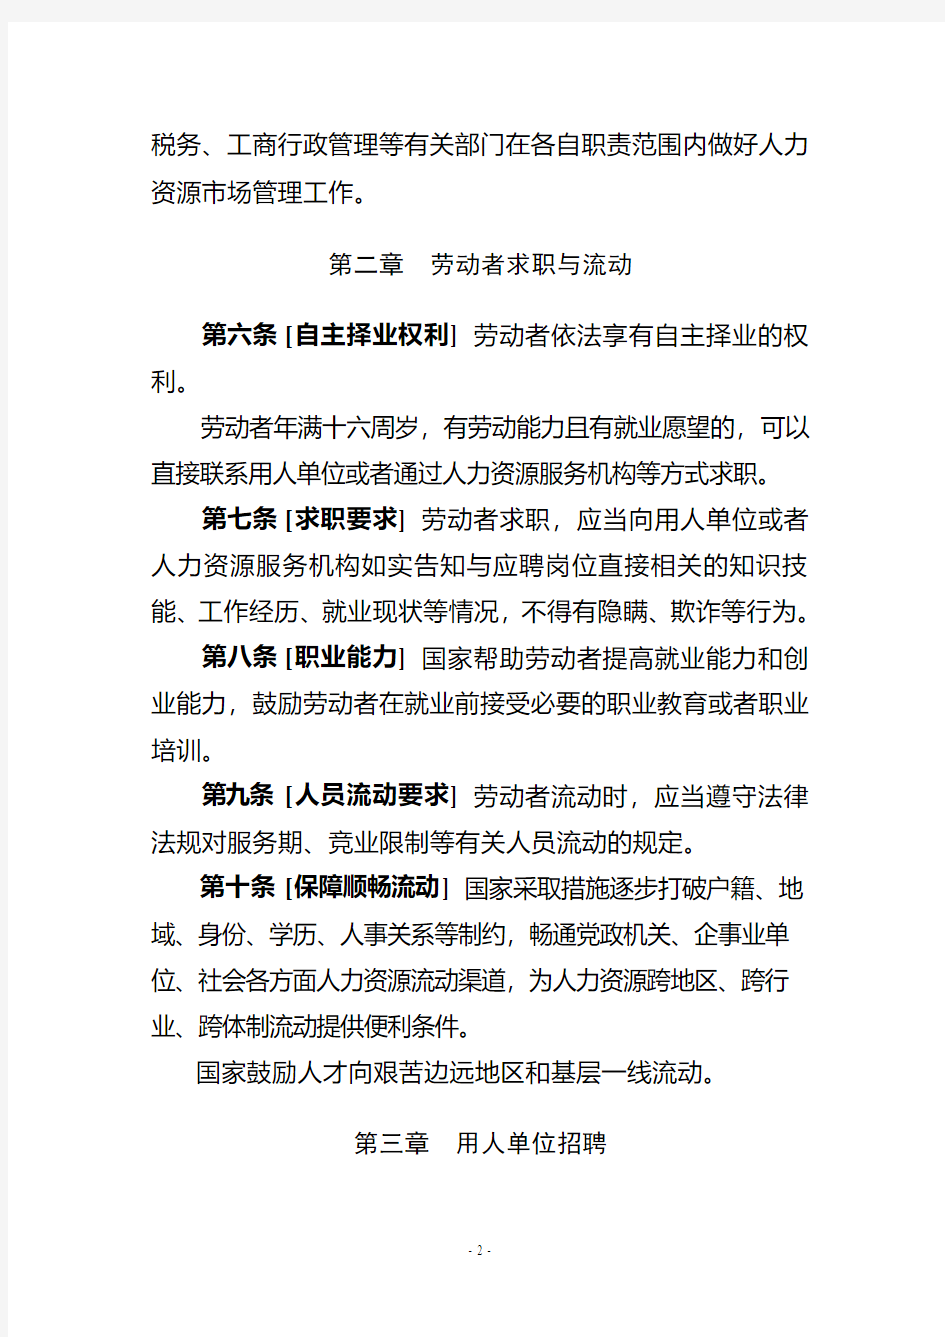 人力资源场条例-中华人民共和国人力资源和社会保障部